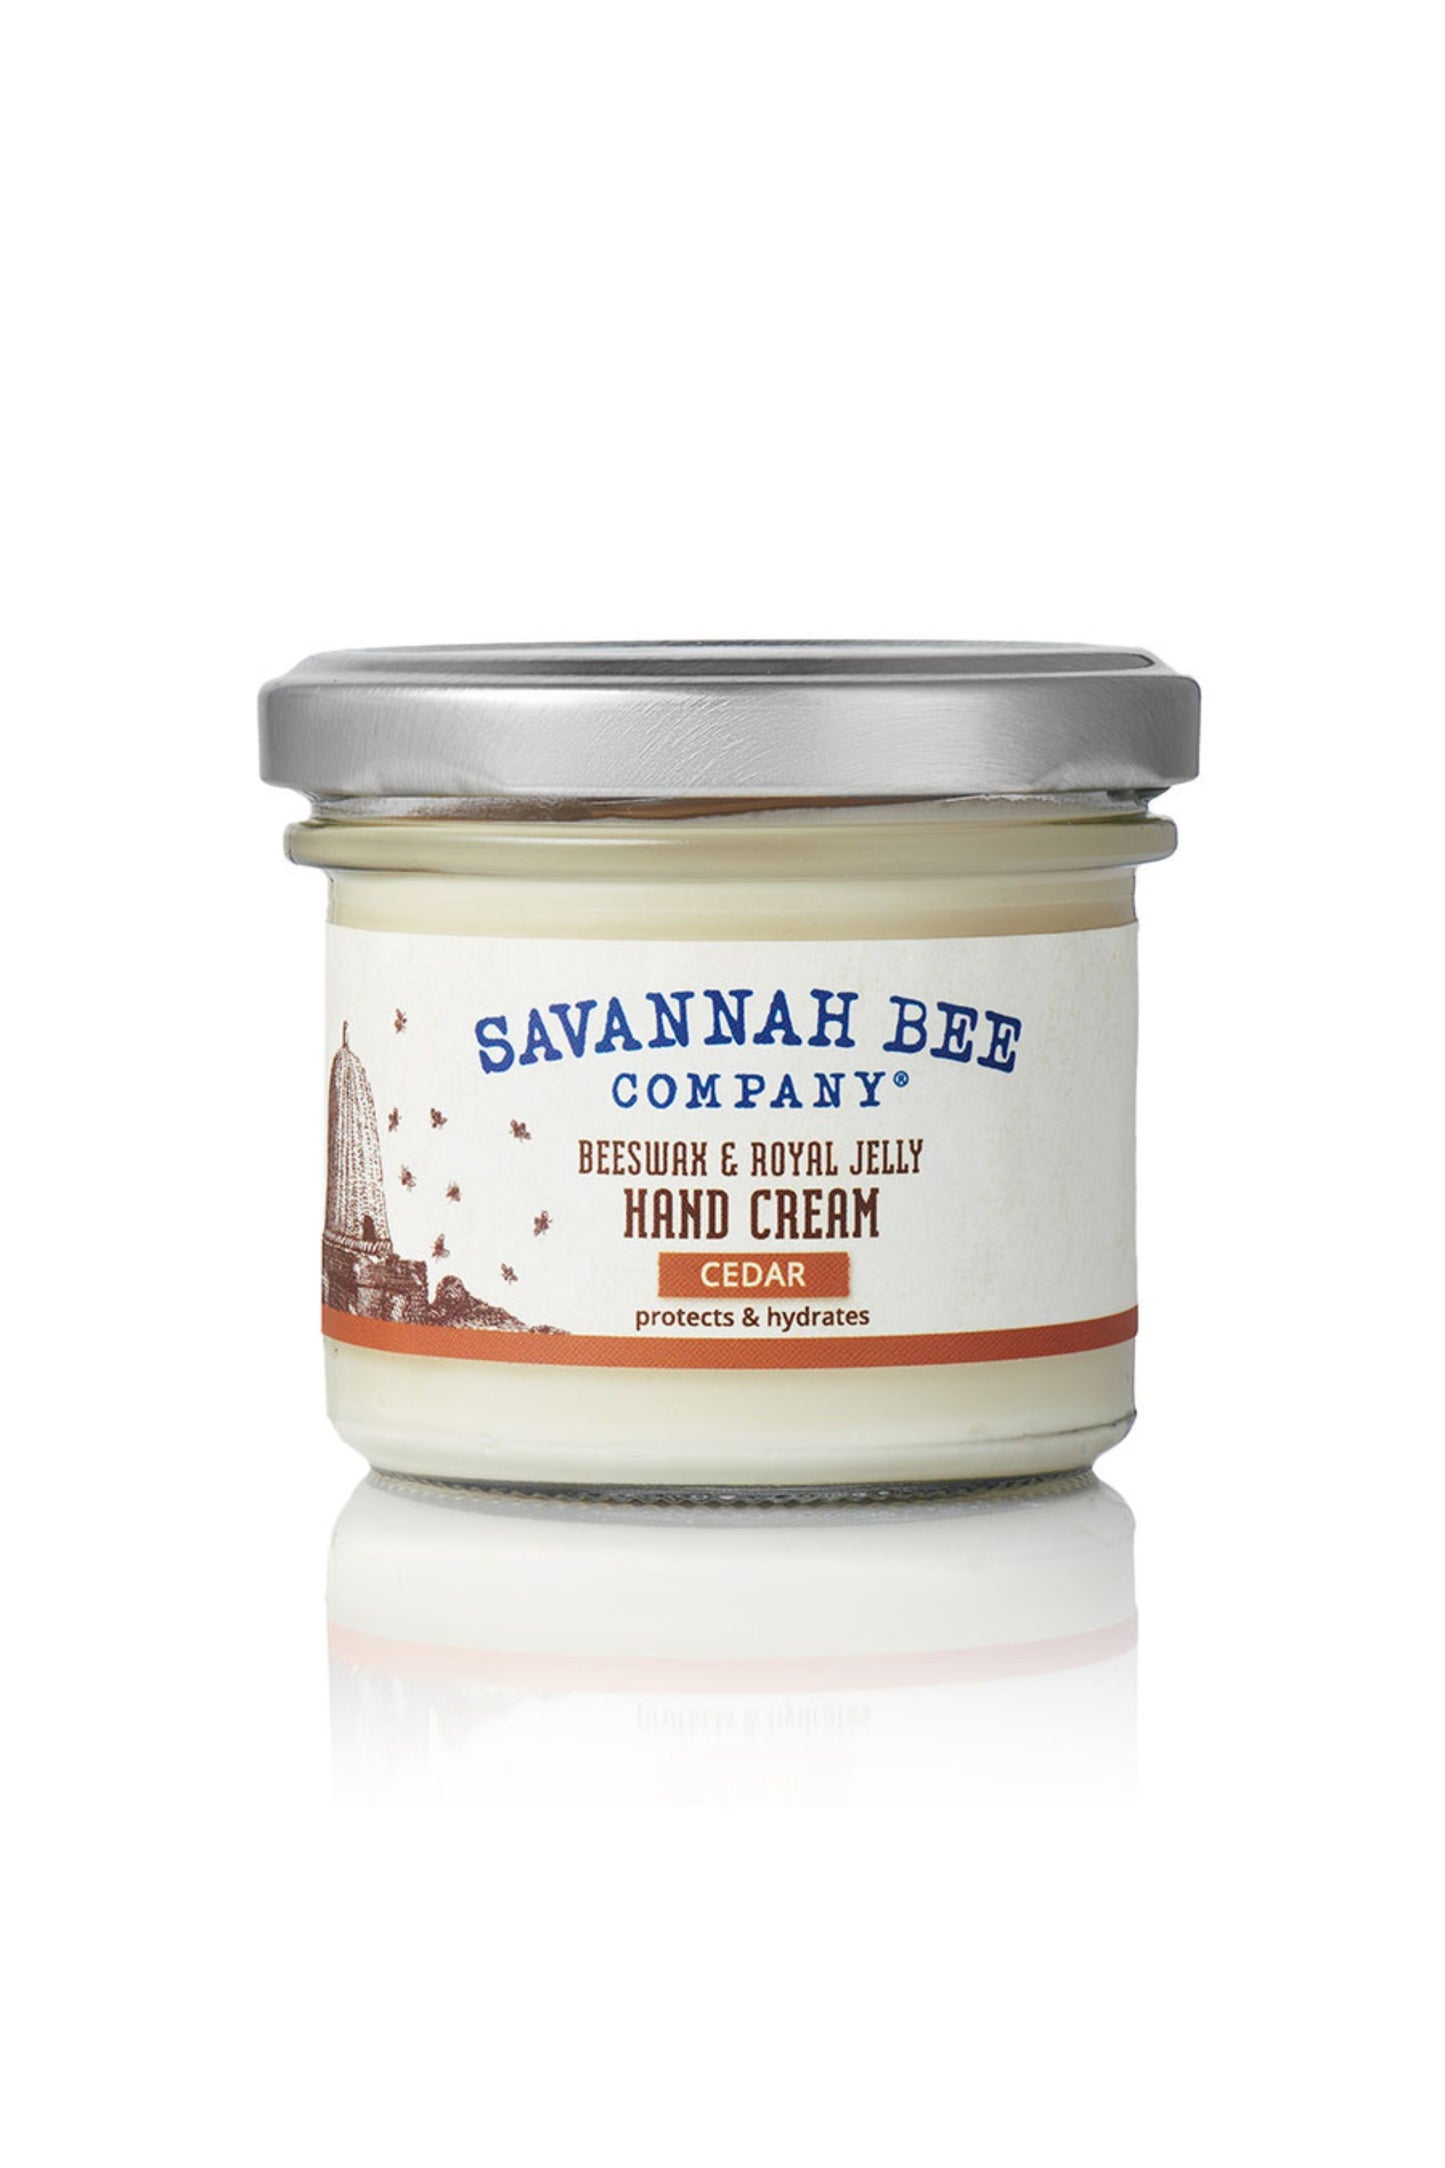 Beeswax & Royal Jelly Cedar Hand Cream Jar